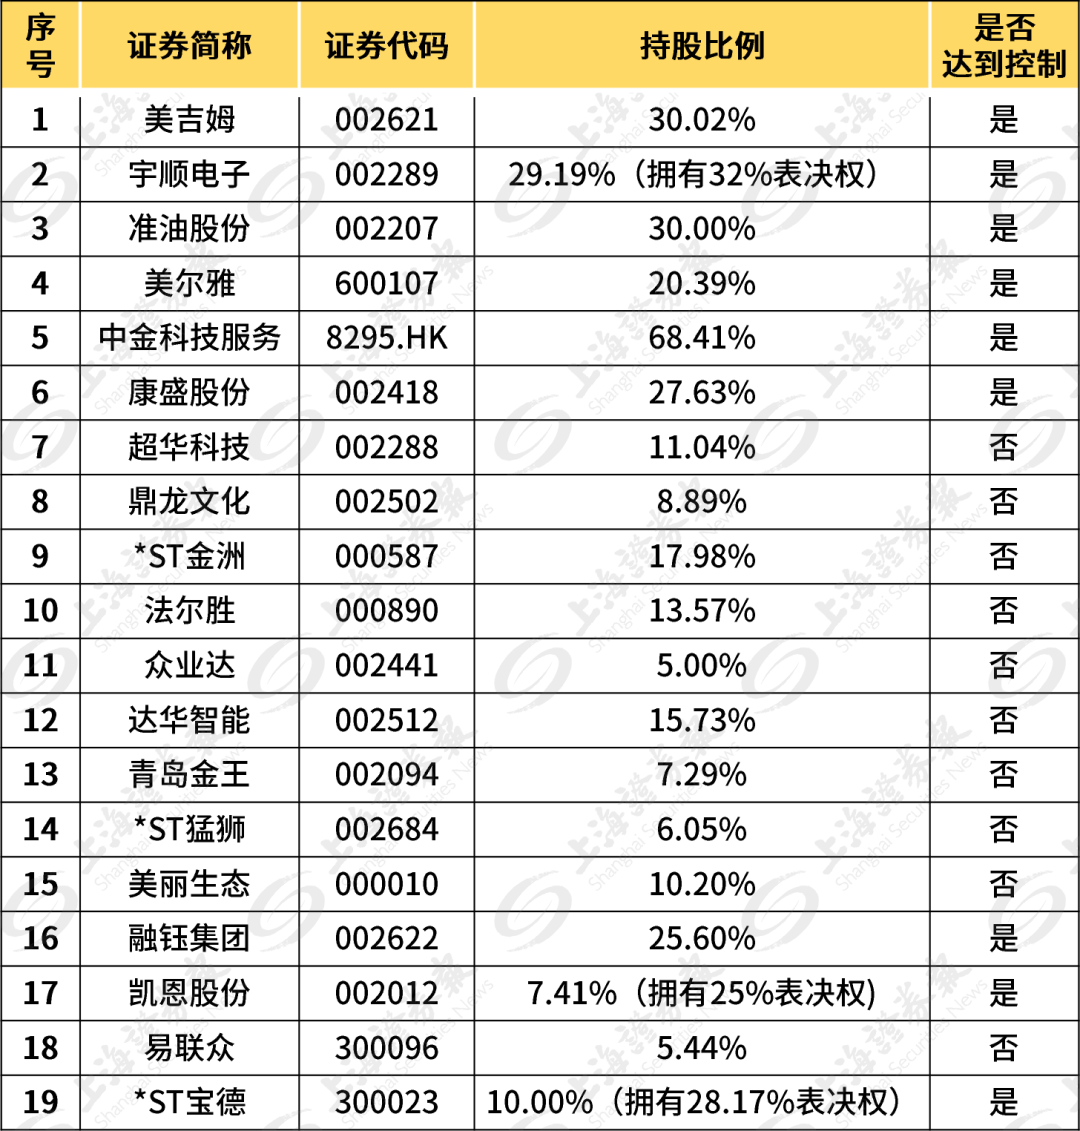 最"高调"的一次,是在2012年福布斯中国富豪榜上,解直锟家族以35亿元